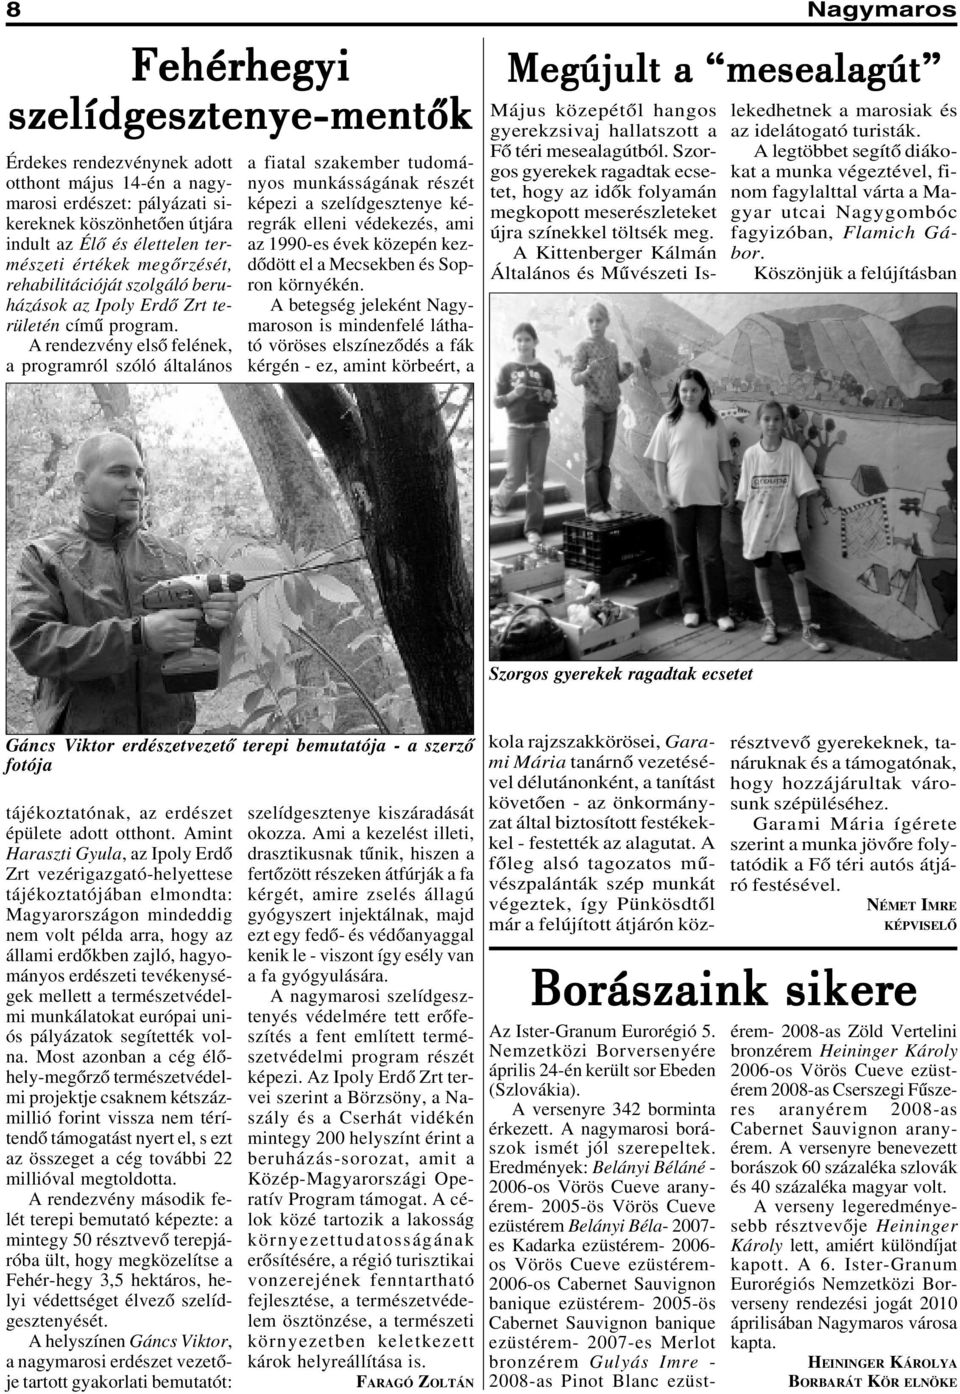 A rendezvény elsõ felének, a programról szóló általános a fiatal szakember tudományos munkásságának részét képezi a szelídgesztenye kéregrák elleni védekezés, ami az 1990-es évek közepén kezdõdött el